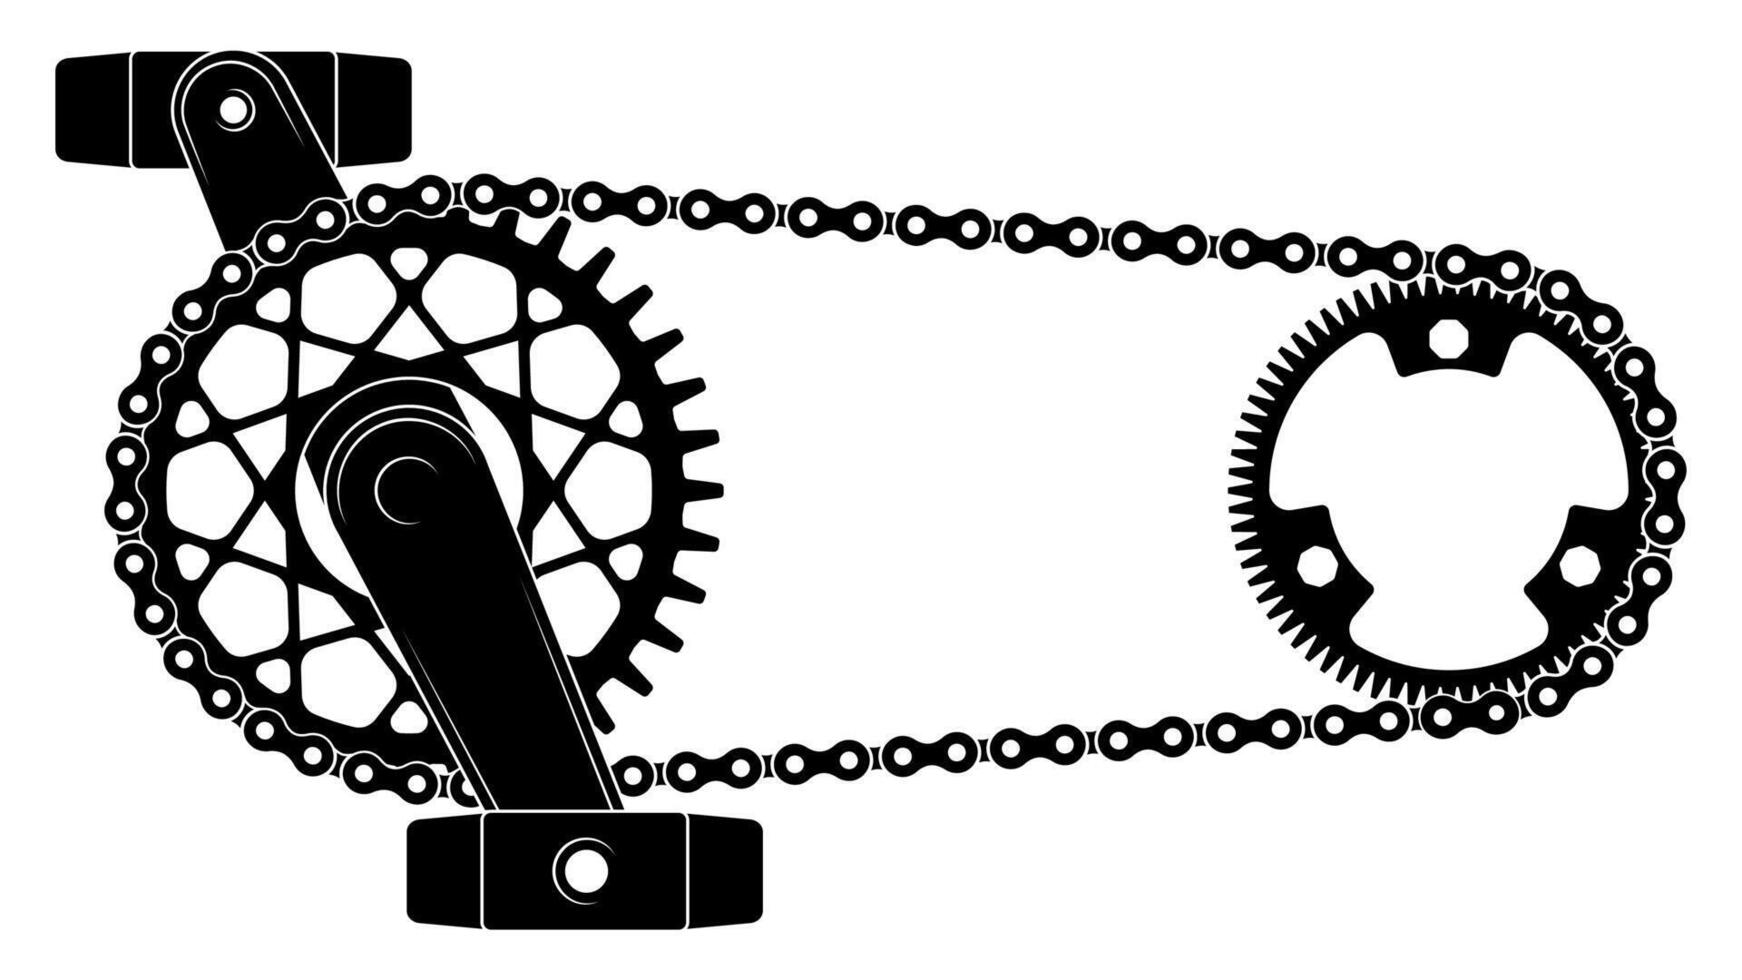 Fahrrad Kette Antrieb. Ausrüstung Mechanismus mit Kettenrad Rad und Fahrrad Fahrt Gürtel, städtisch Transport Pedal Gangschaltung Mechanismus. Vektor Illustration